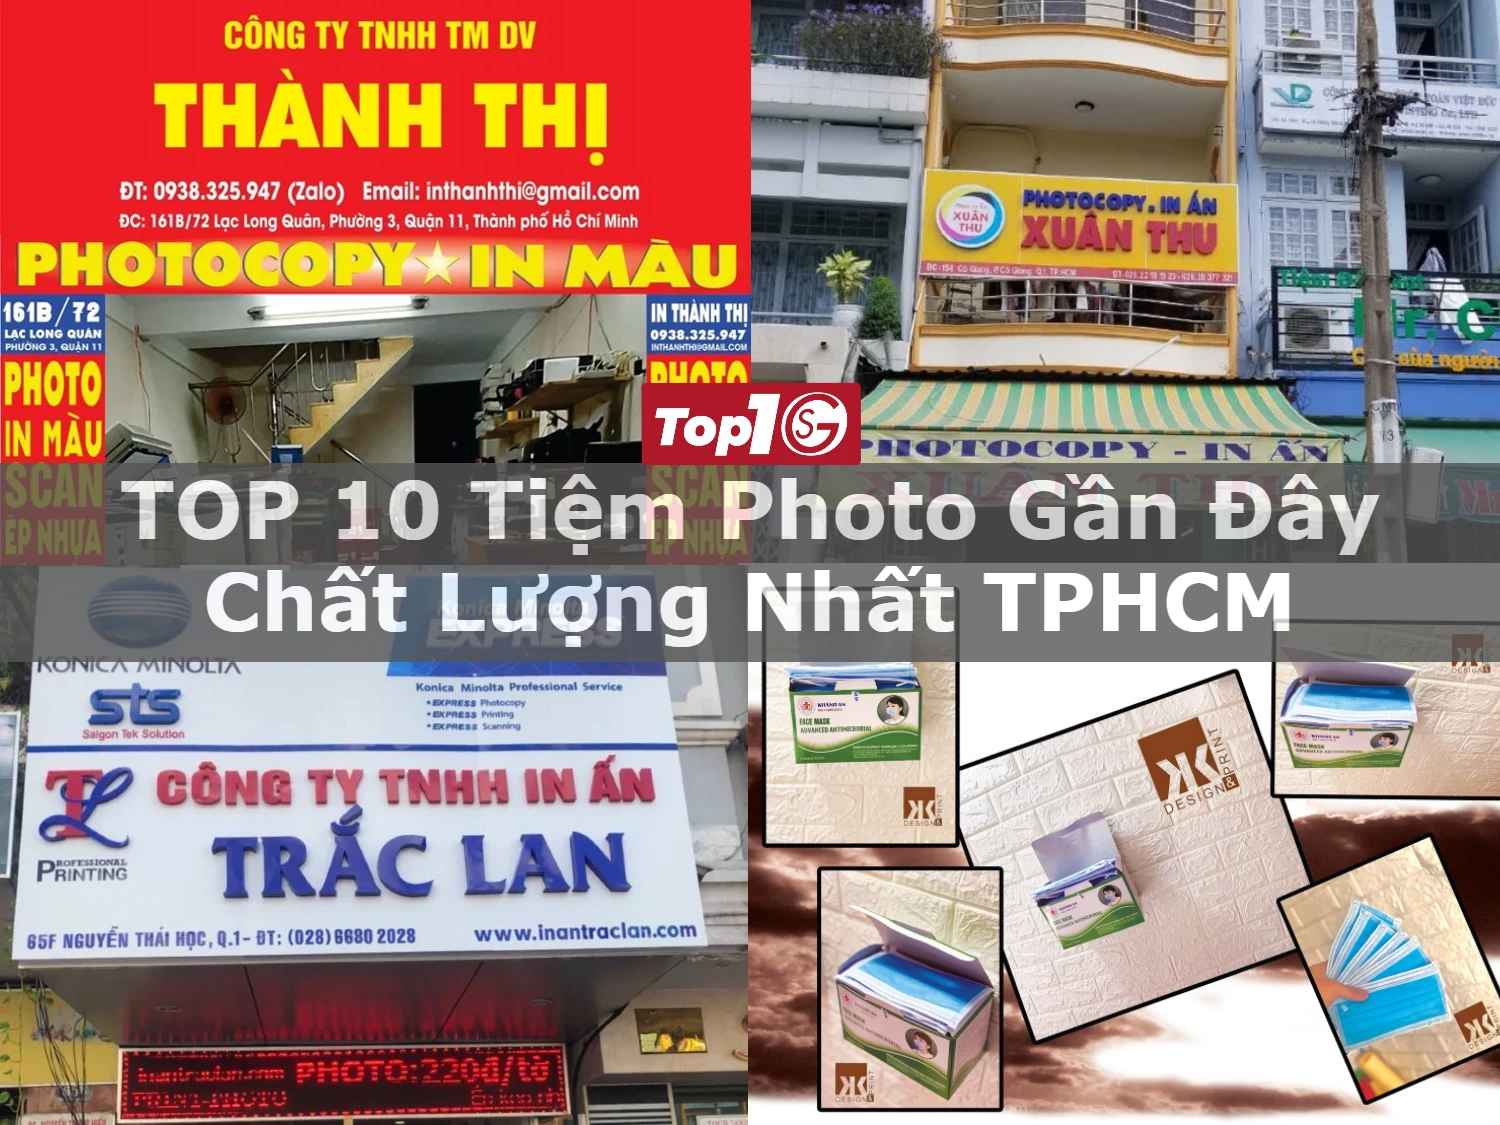 TOP 10 tiệm photo gần đây chất lượng nhất TPHCM